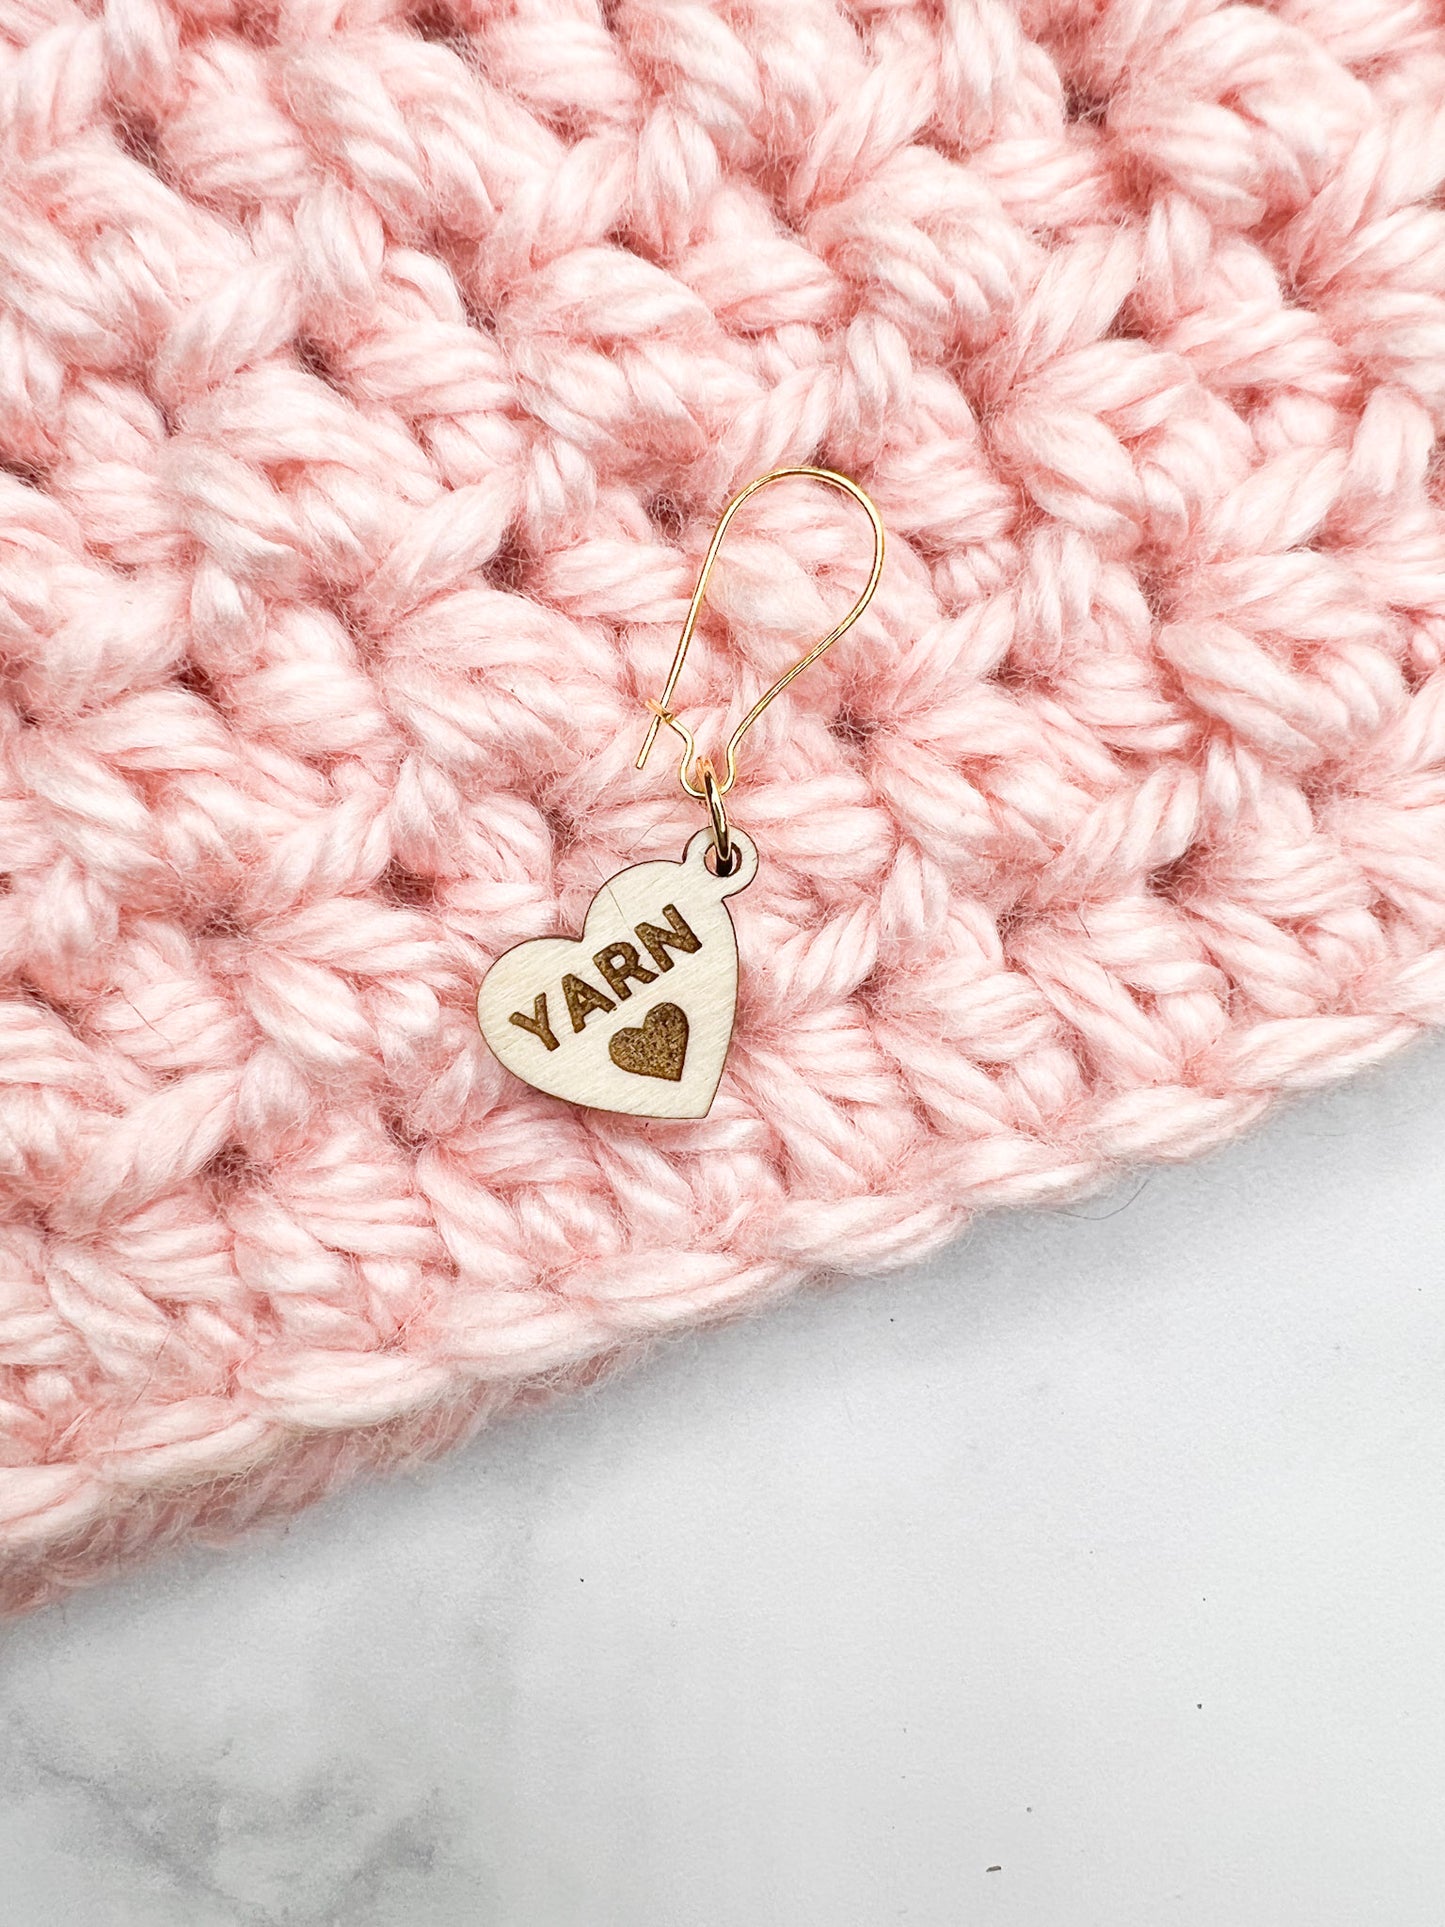 Heart Stitch Marker w/ Crochet Sayings